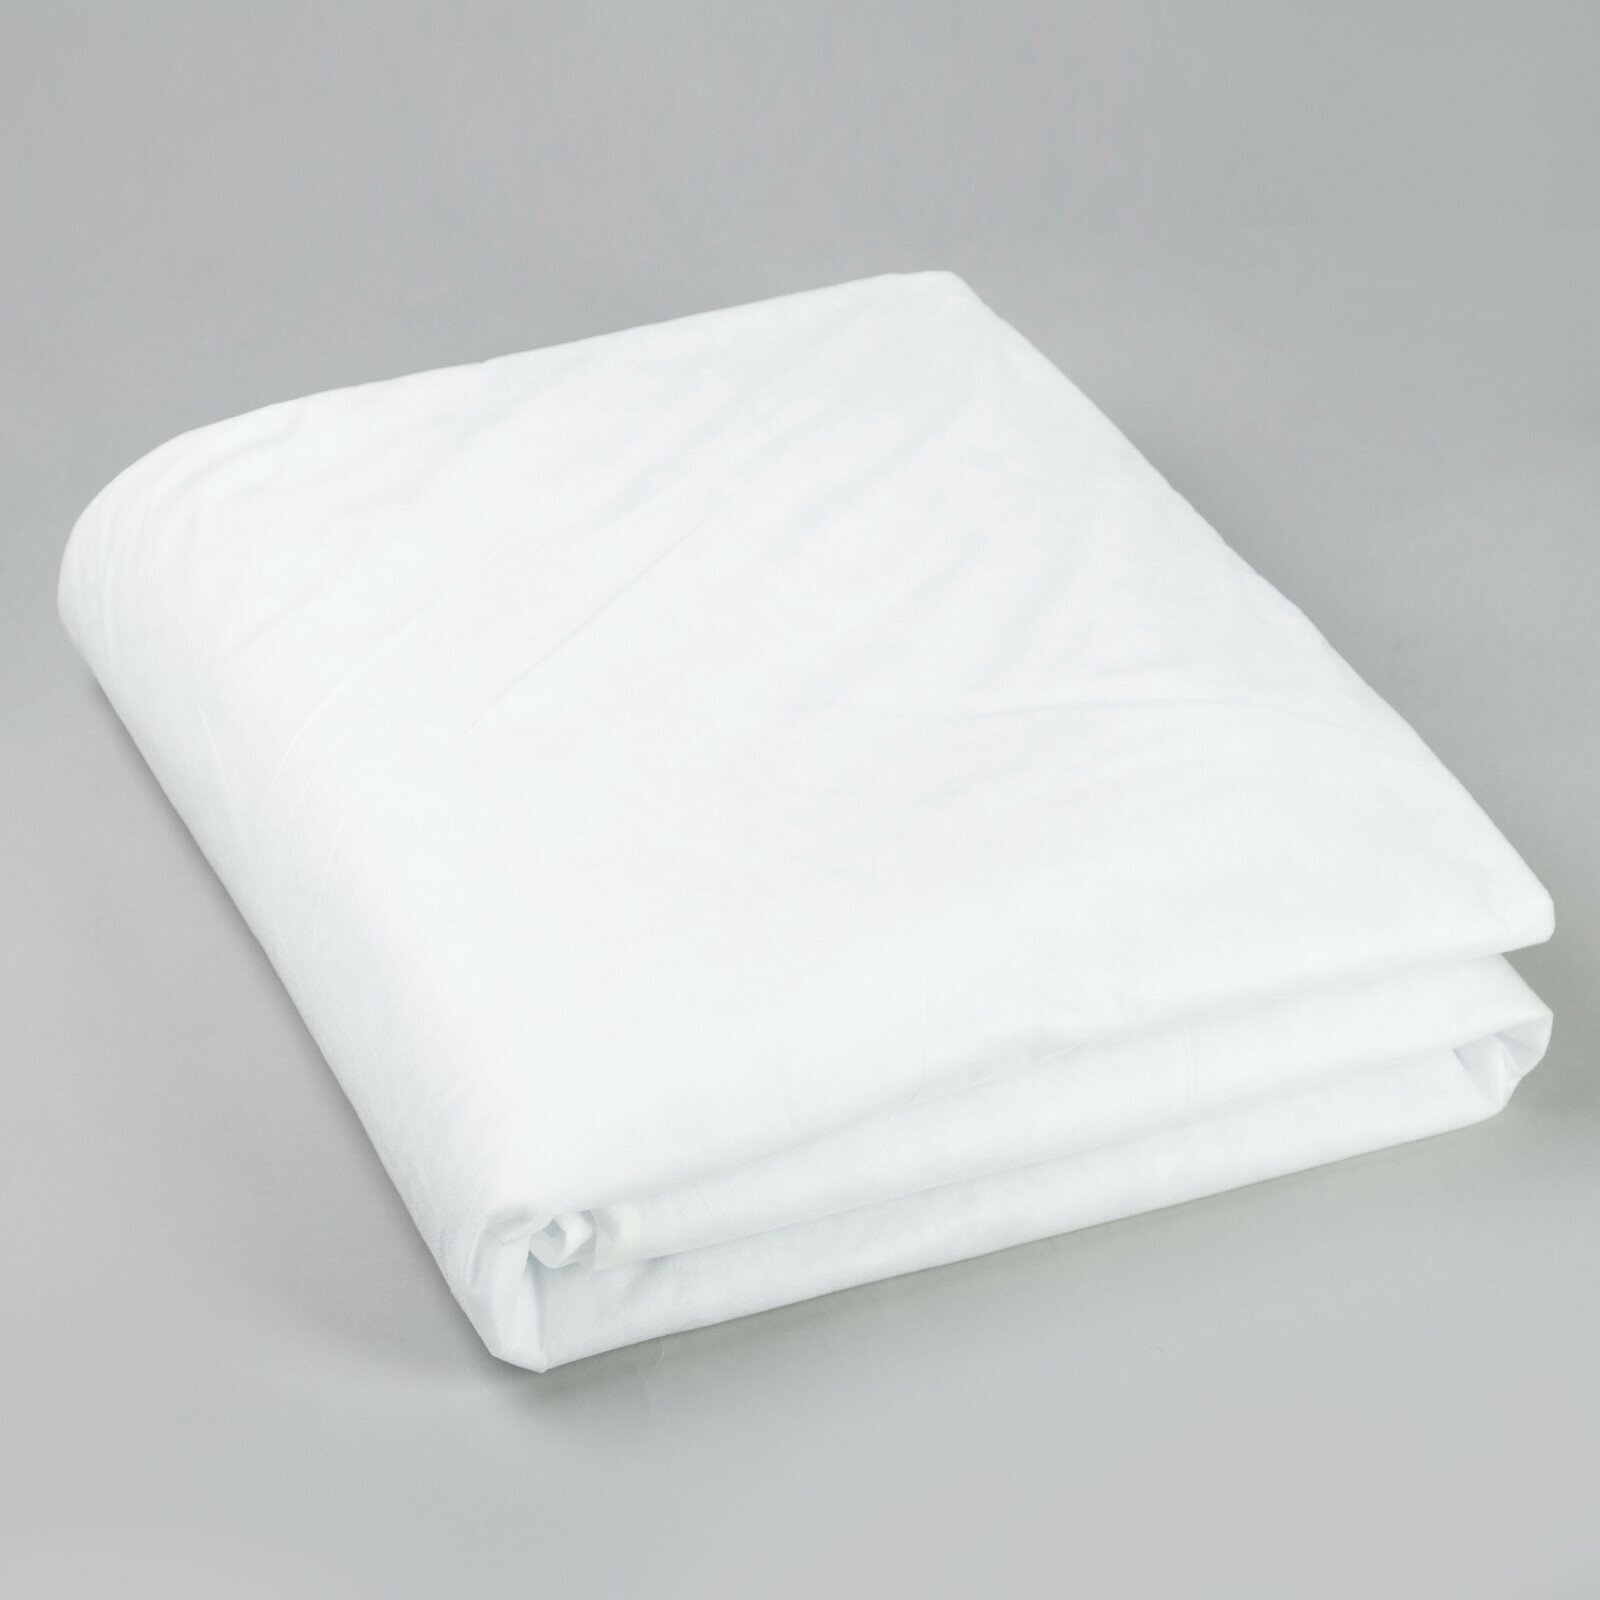 Одеяло облегченное 140*205 см, чехол спанбонд, синтепон 100г/м2